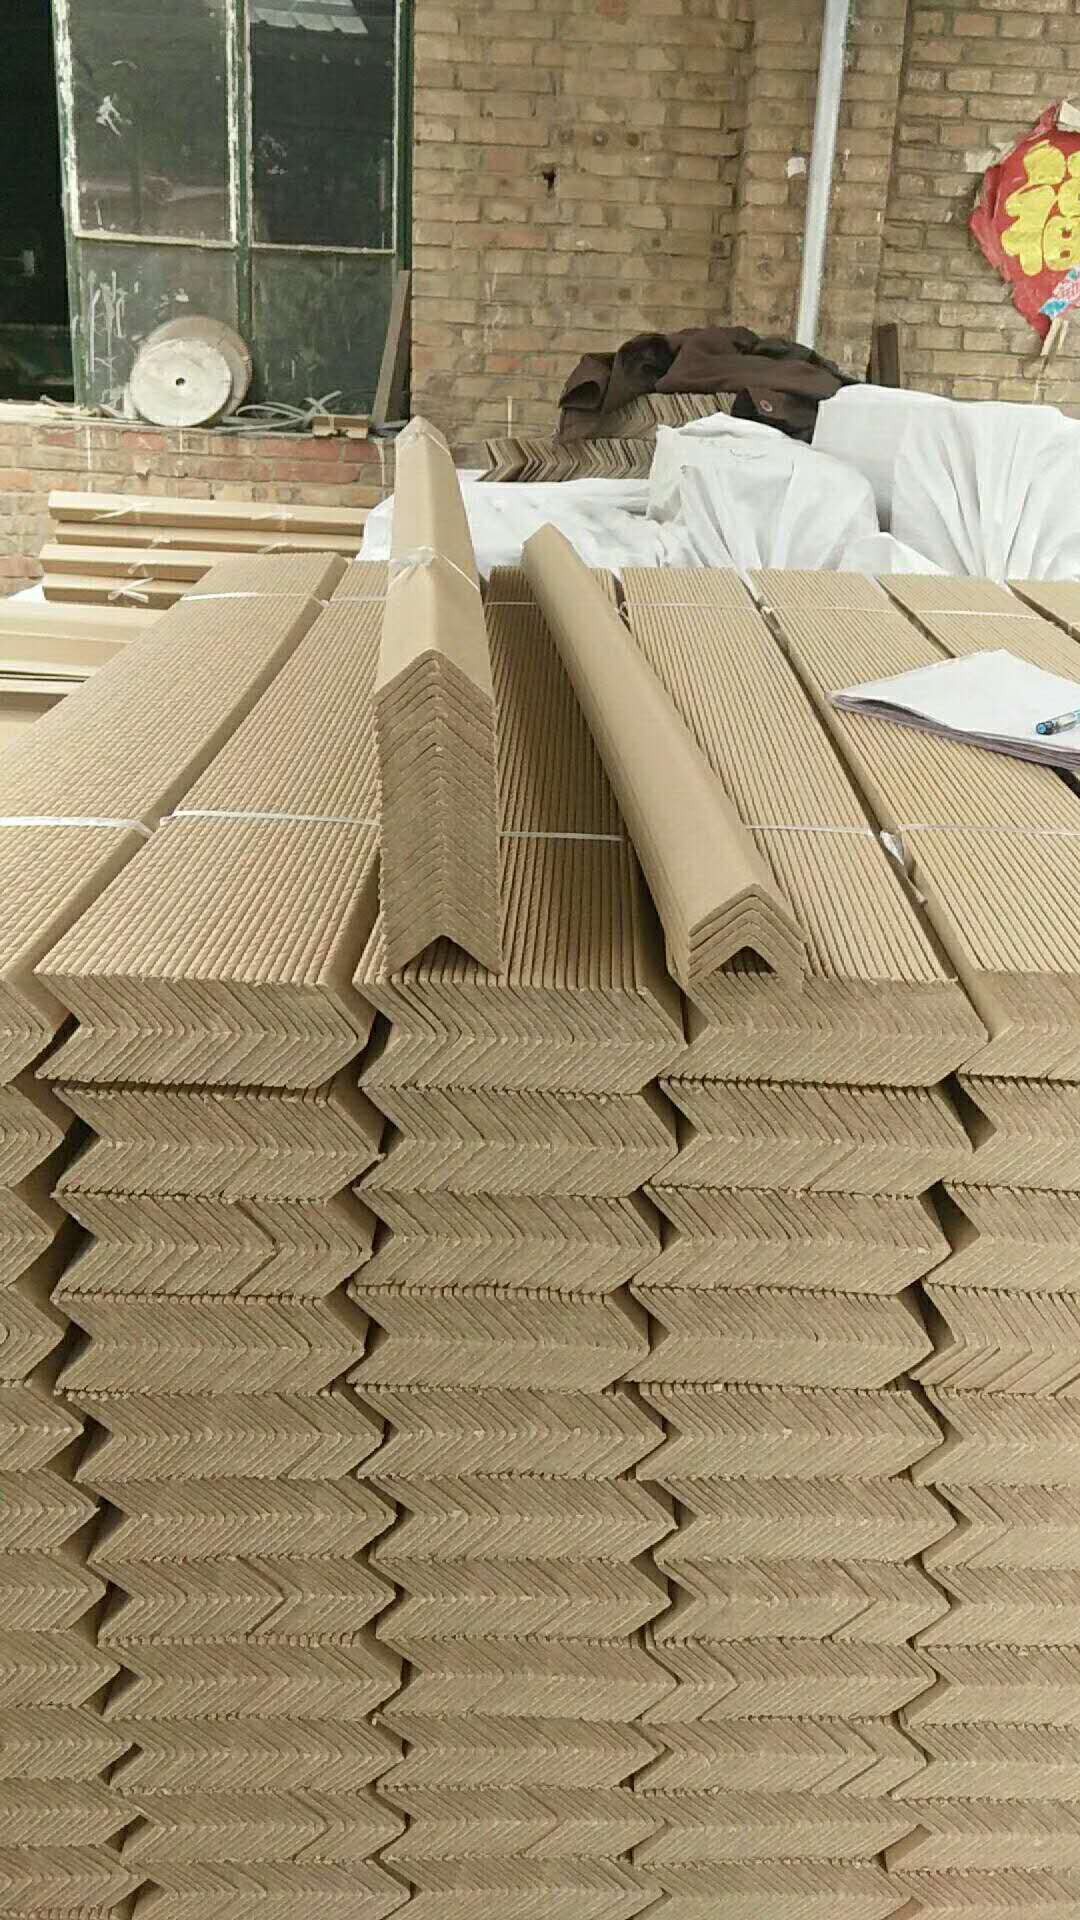 供应 纸护角 北京纸护角厂家 优质纸护角厂家图片